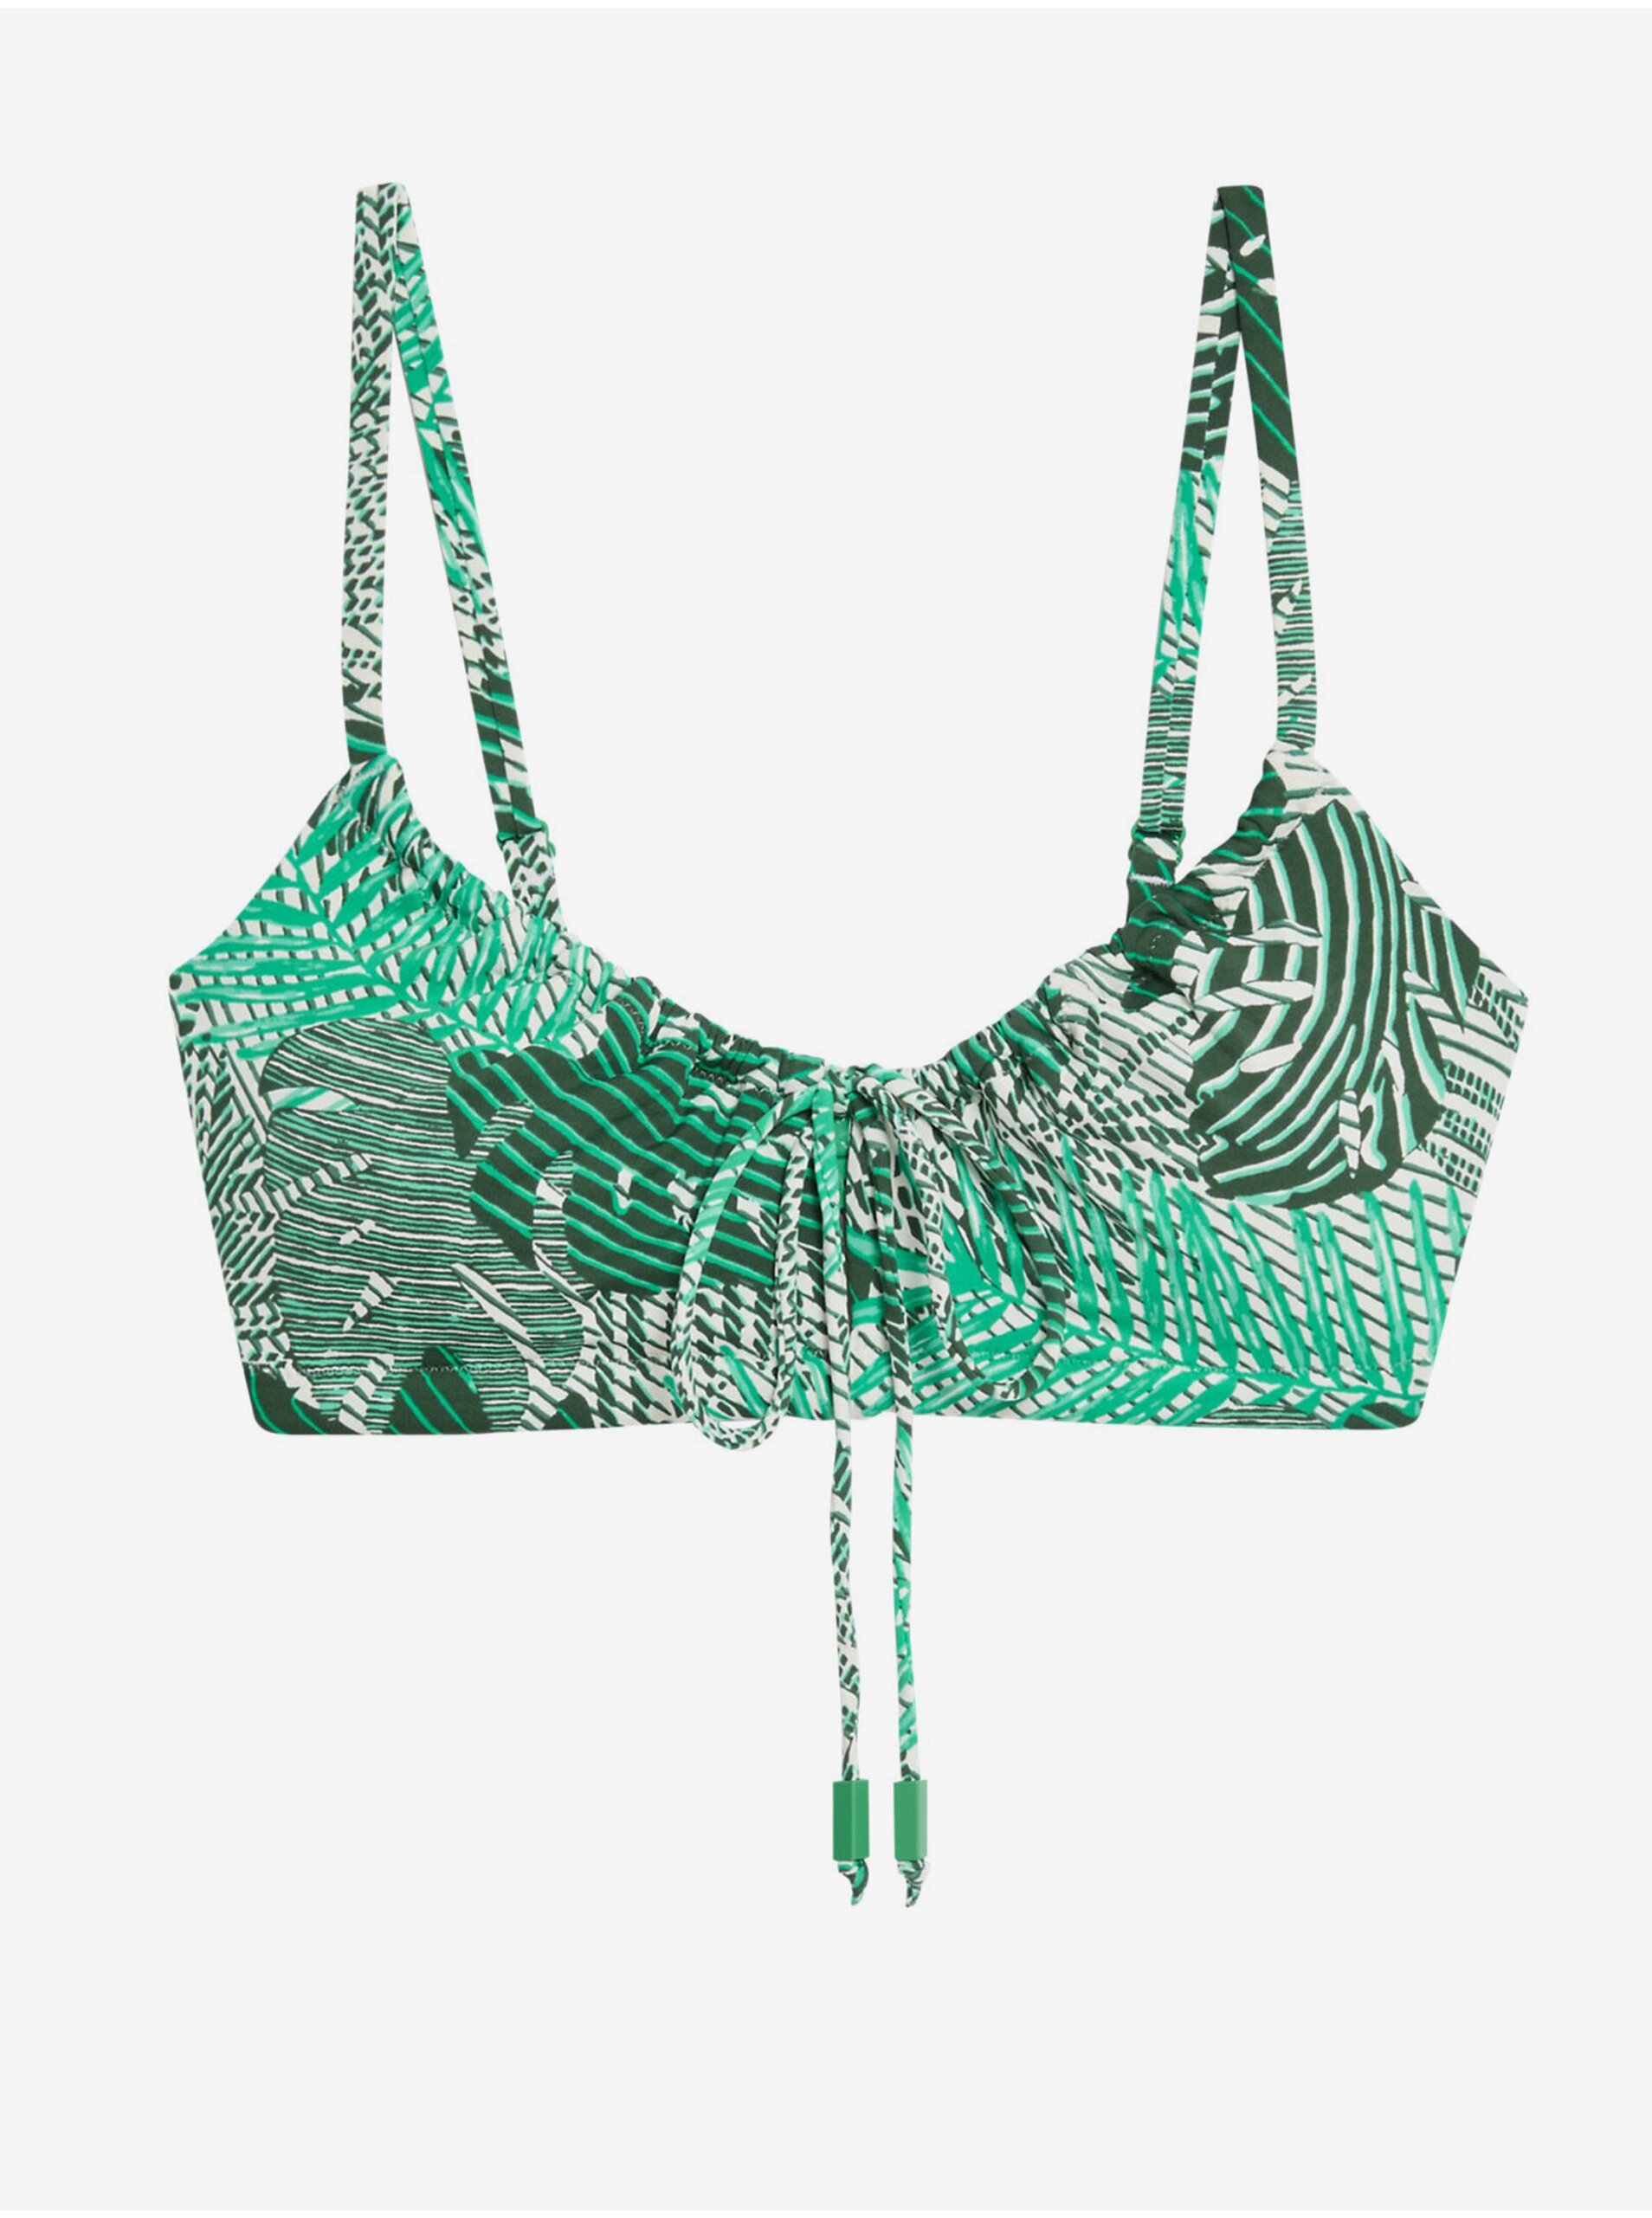 Lacno Zelený dámsky vzorovaný vystužený horný diel plaviek Marks & Spencer